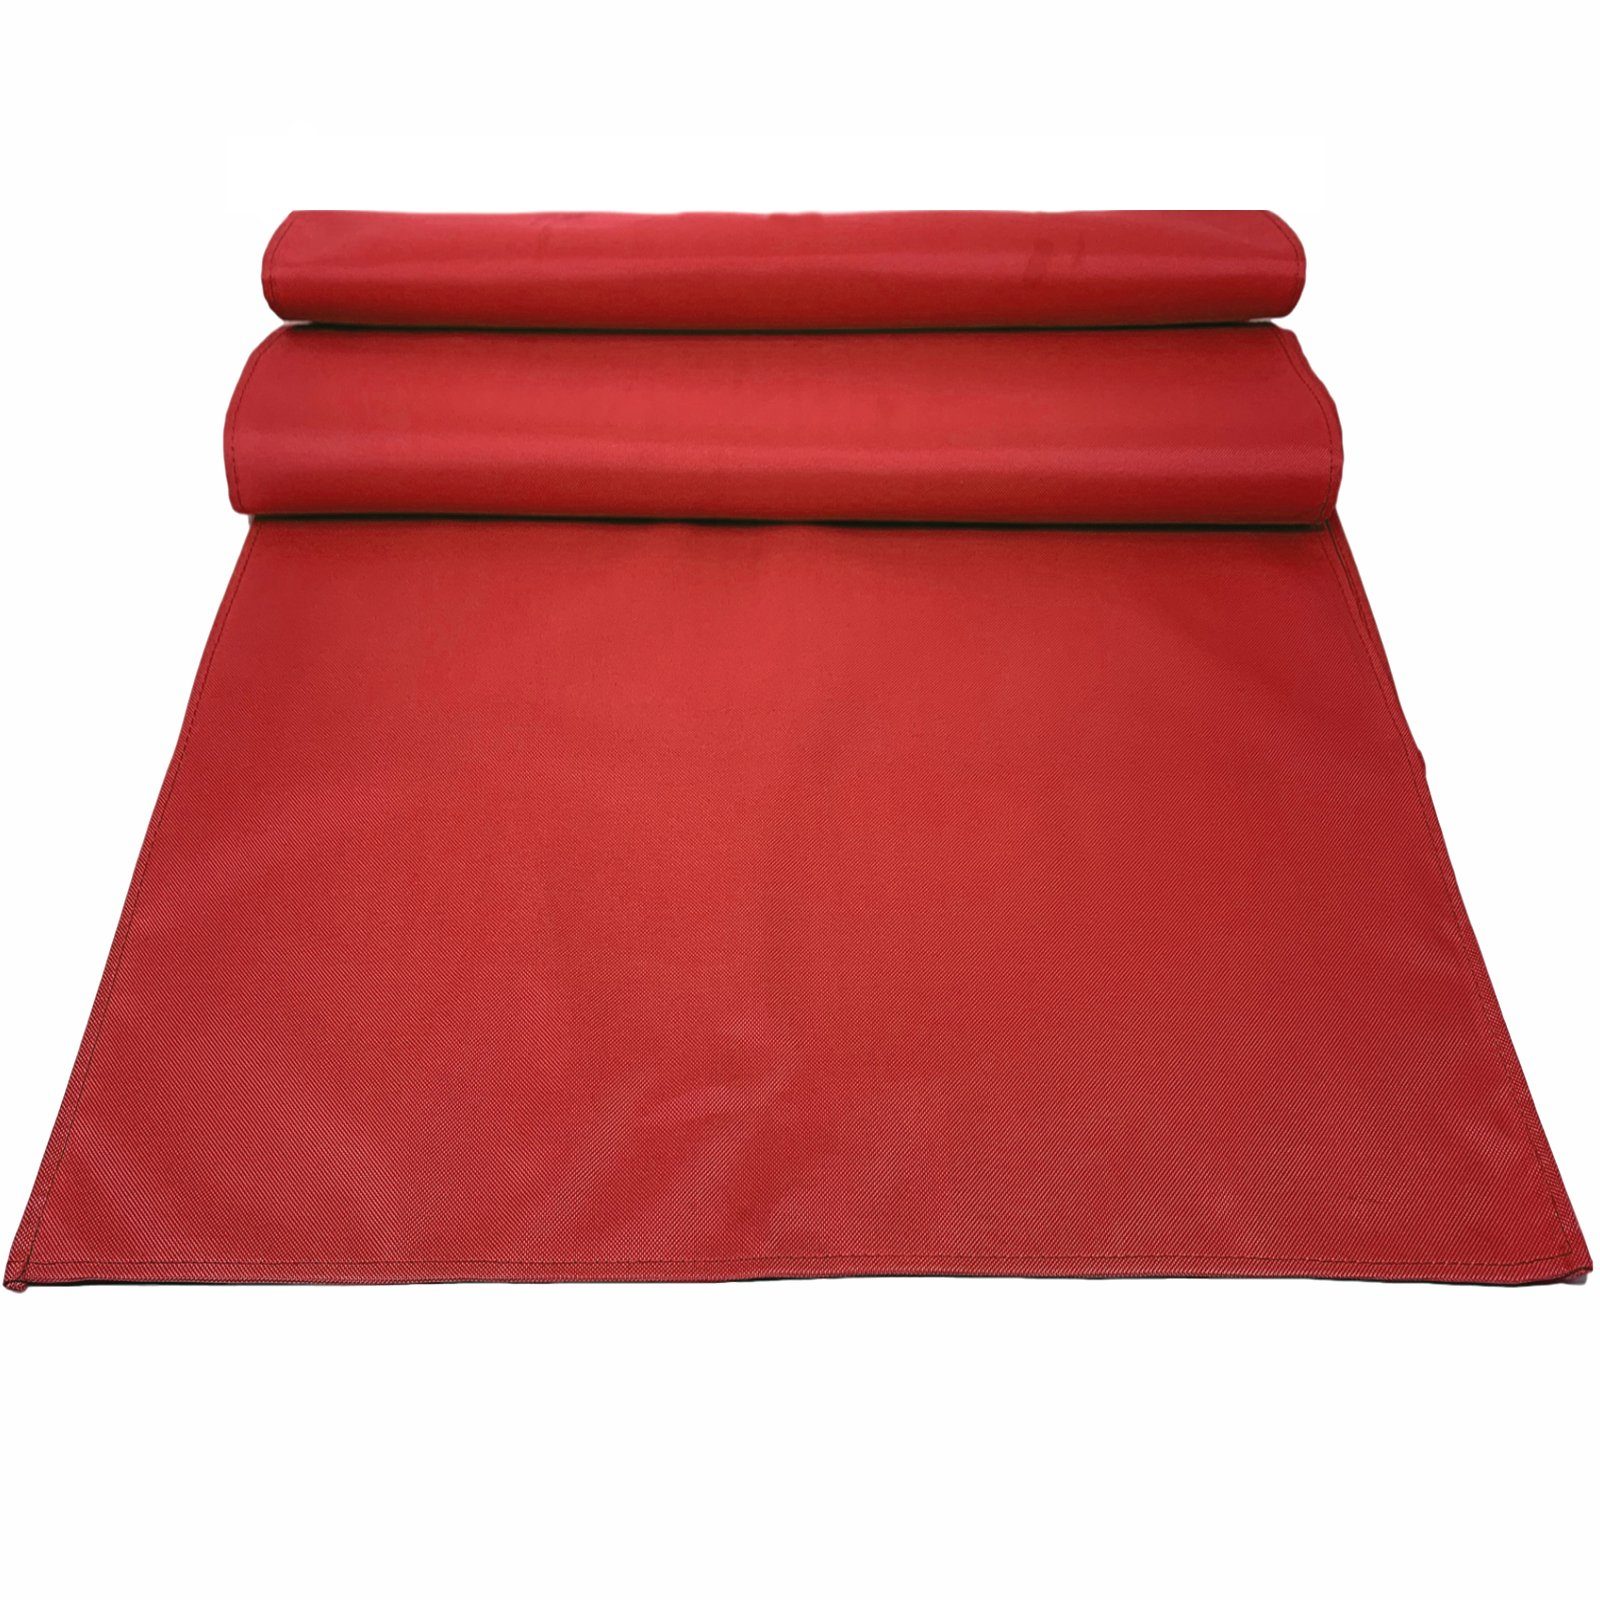 JEMIDI Tischläufer 2er Pack wasserabweisende Outdoor Platzdecken und Tischset Rot